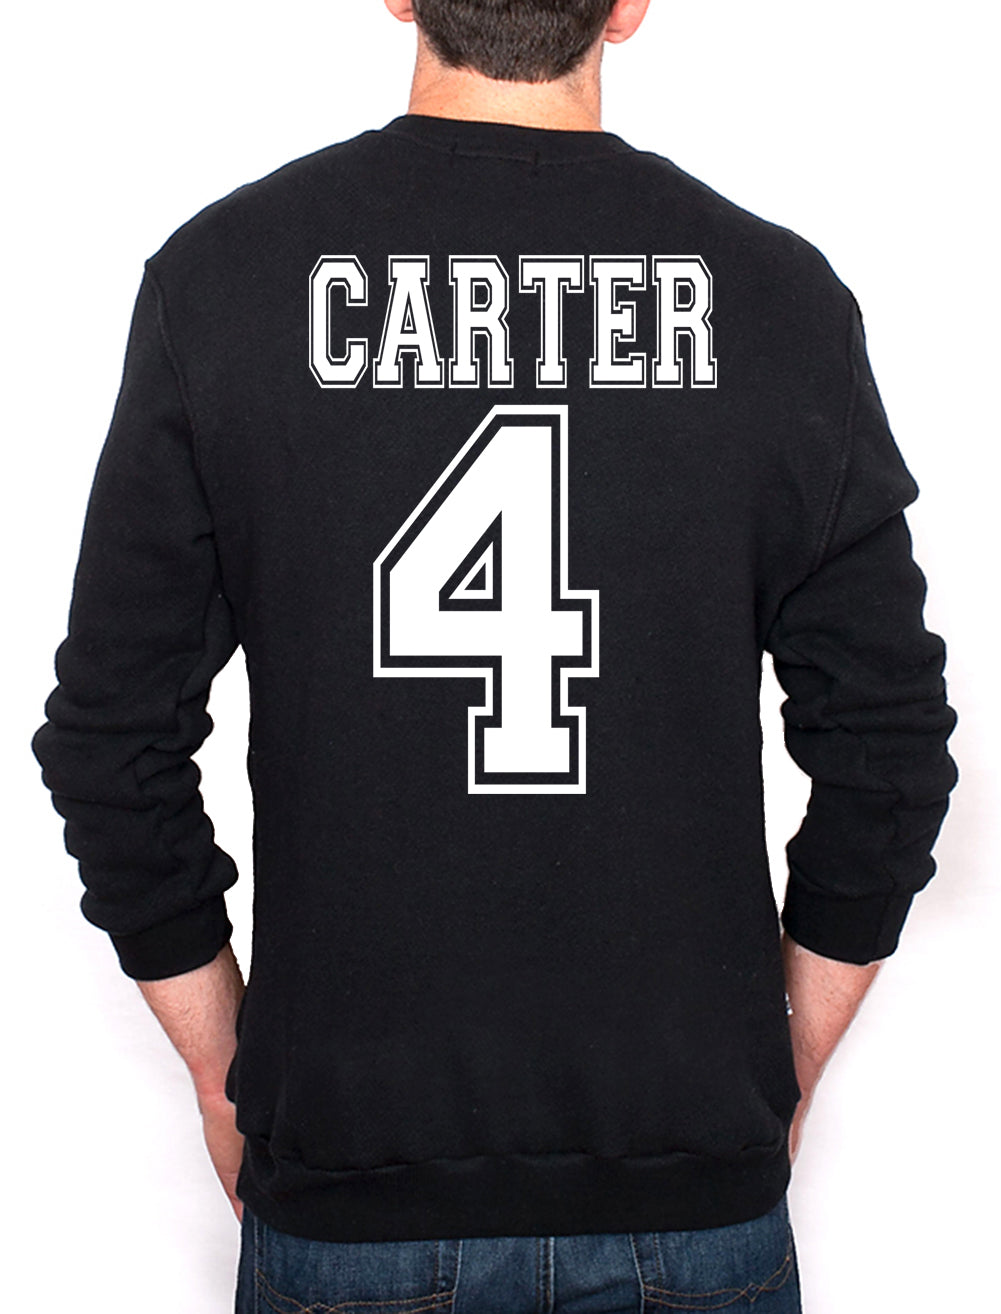 Carter 4 Crewneck Sweatshirt